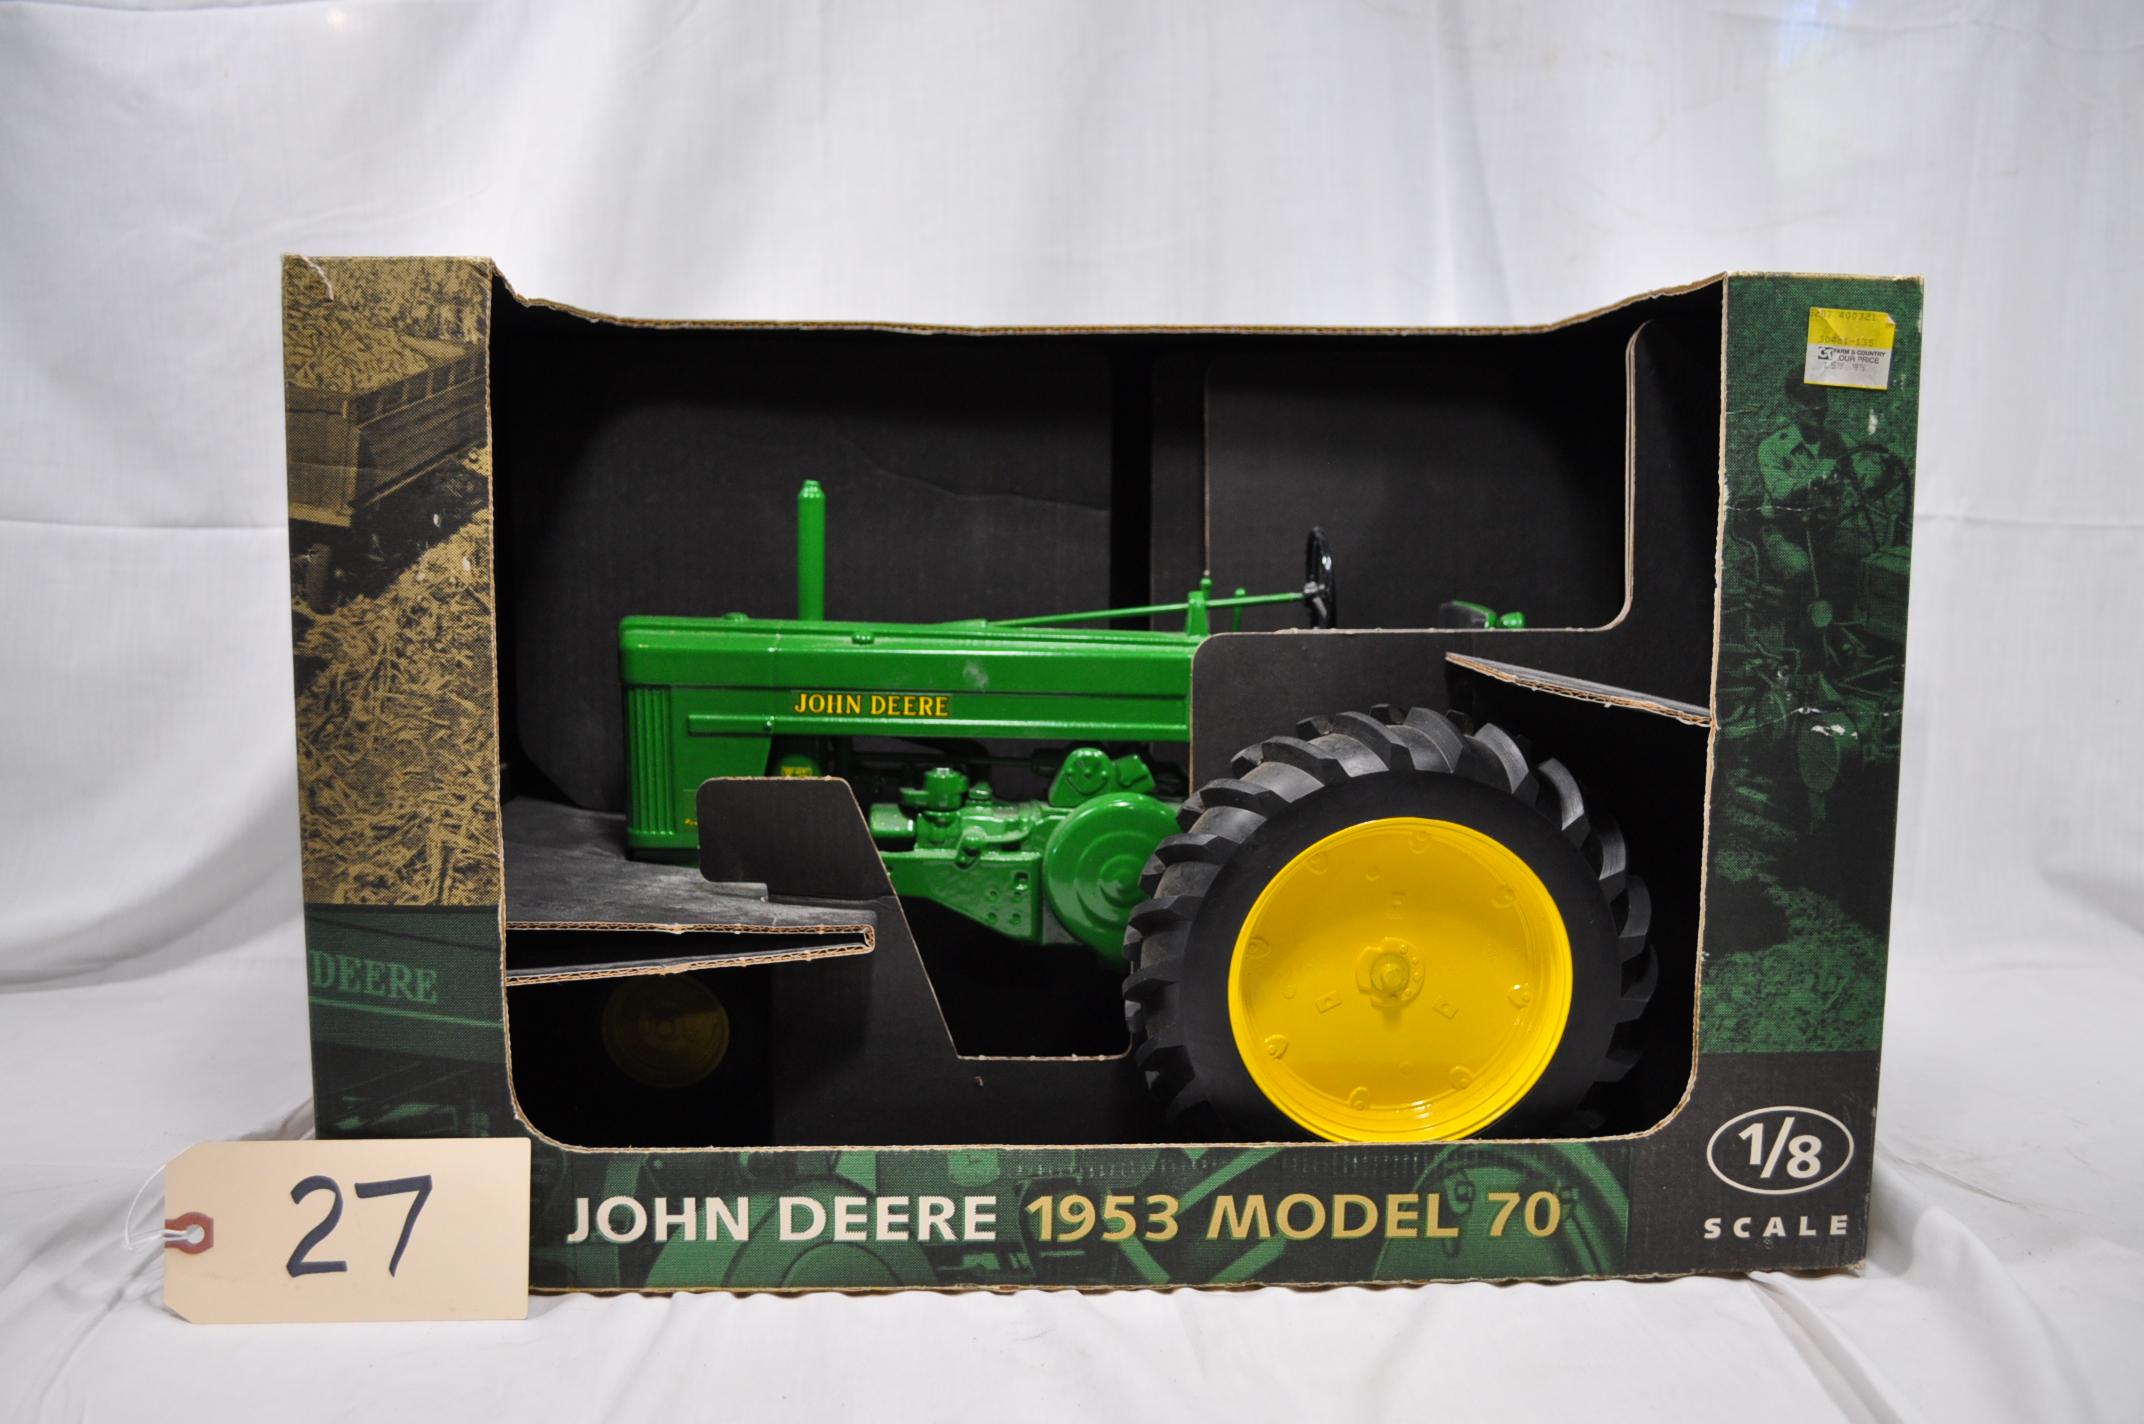 John Deere 1953 Model 70 - 1/8th scale  - new in box